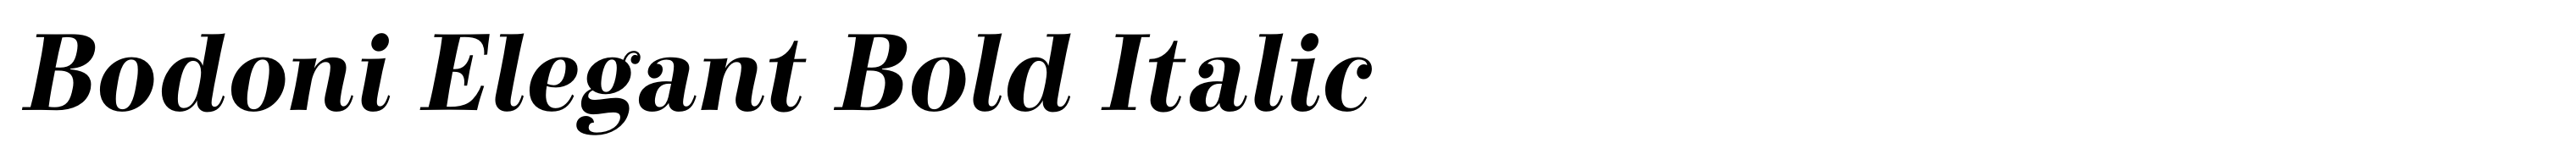 Bodoni Elegant Bold Italic